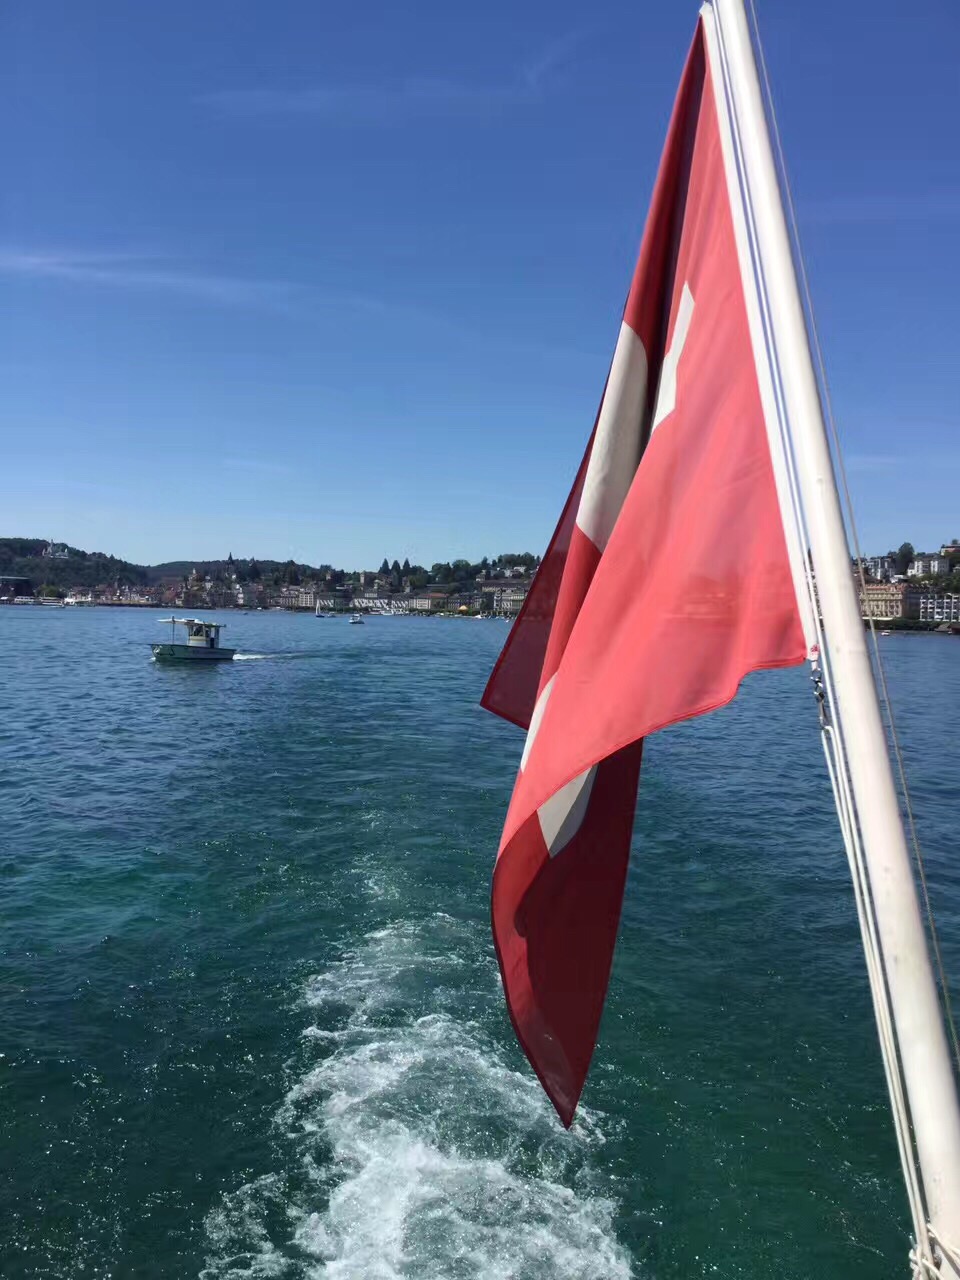 【韦吉斯小镇】 瑞士韦吉斯小镇位于琉森湖畔,安静舒适，是瑞士大城市富人们的度假休闲之处，在湖边筑一别